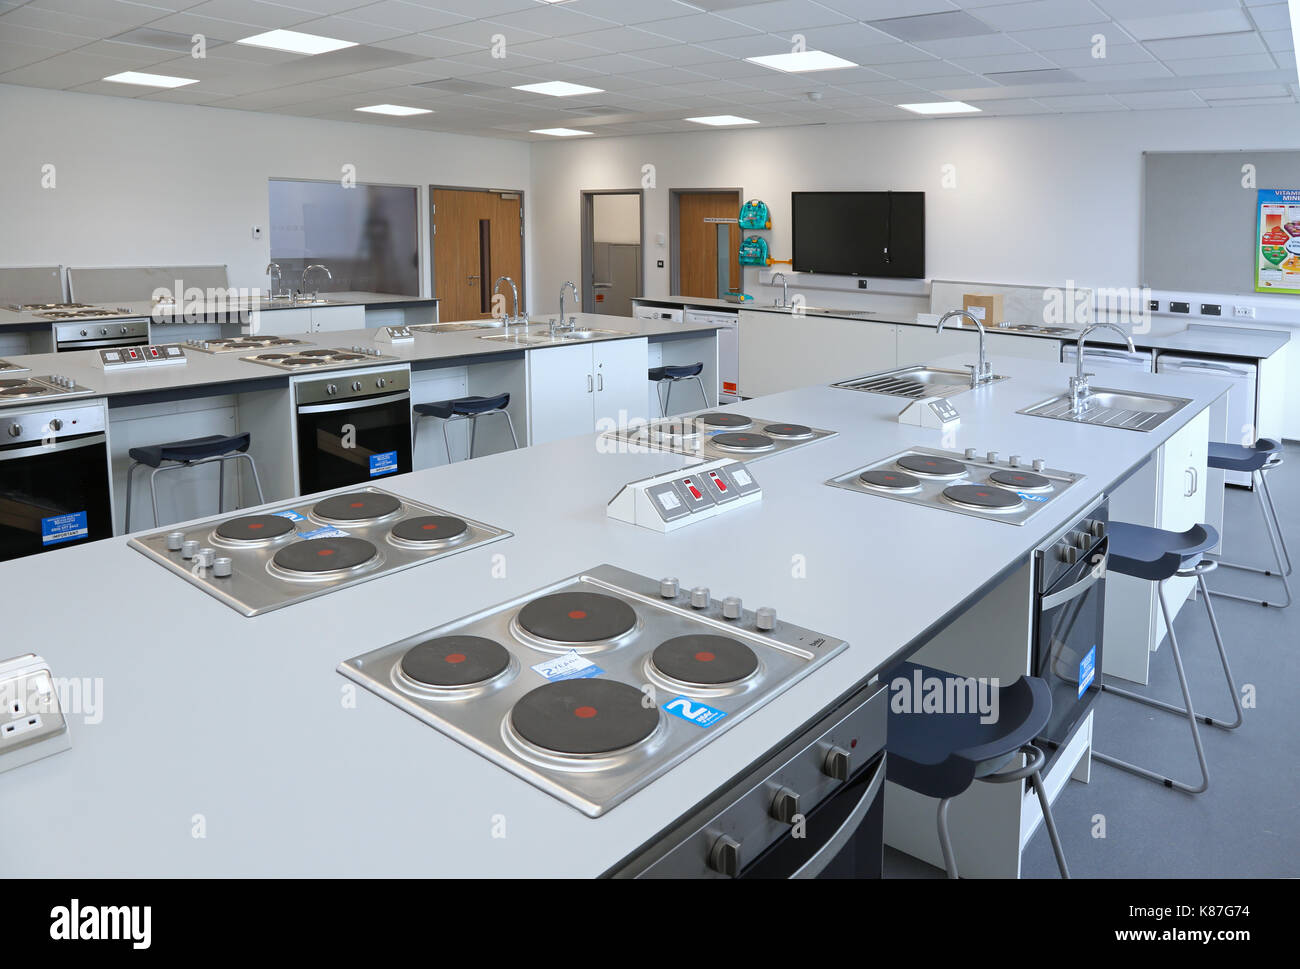 Economia domestica / classe di cucina in un nuovo, Londra scuola secondaria. Mostra piani di cottura e forni e insegnanti al di là del banco. Foto Stock